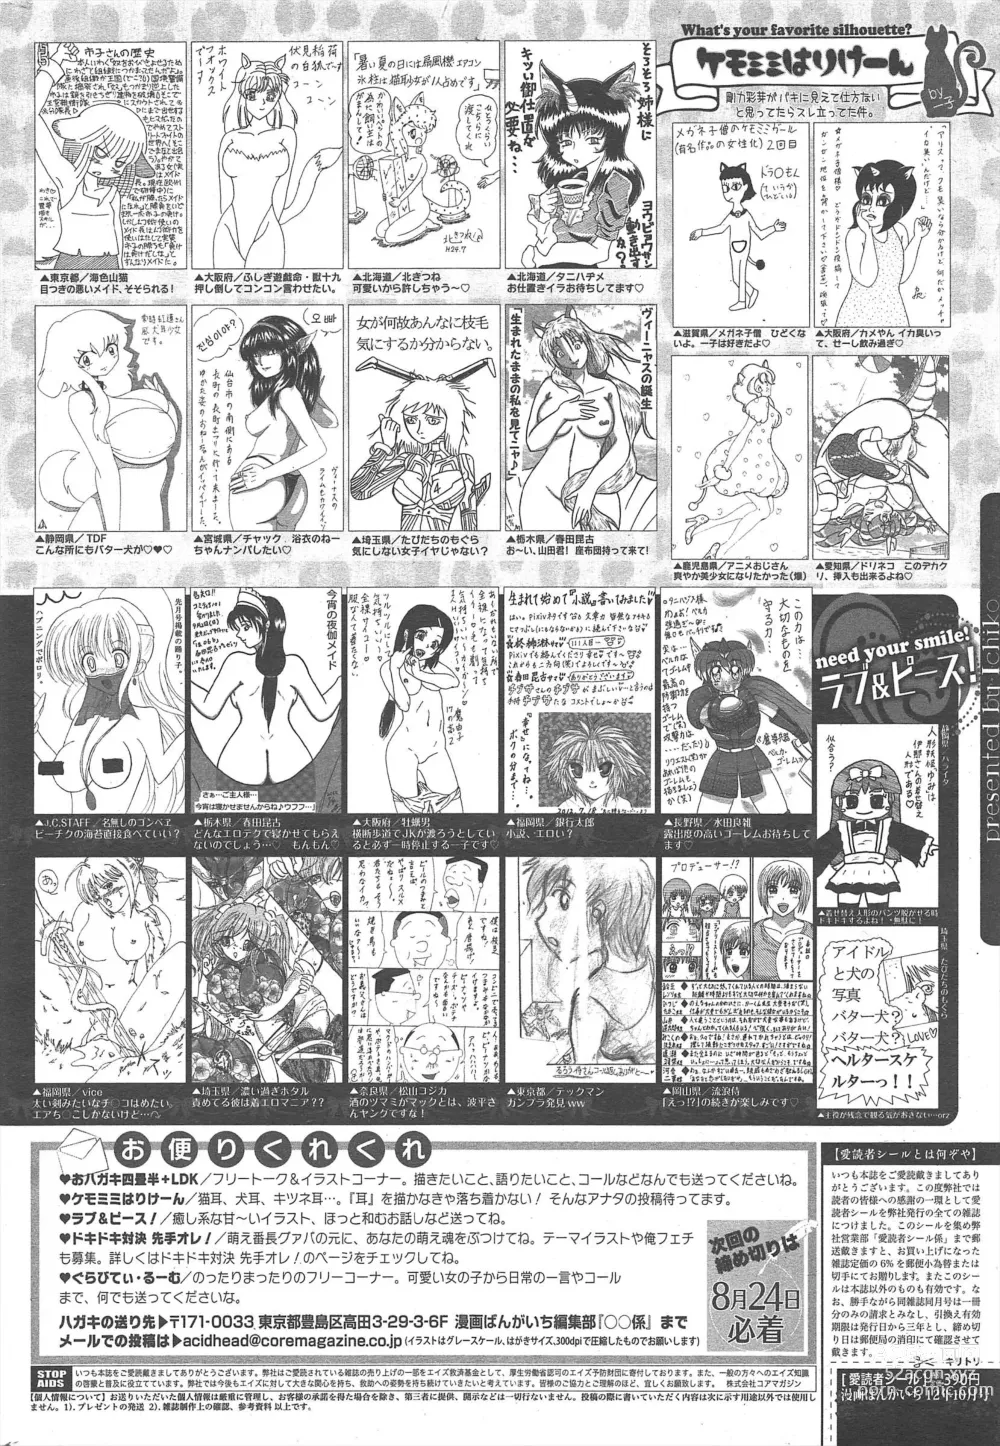 Page 262 of manga Manga Bangaichi 2012-10